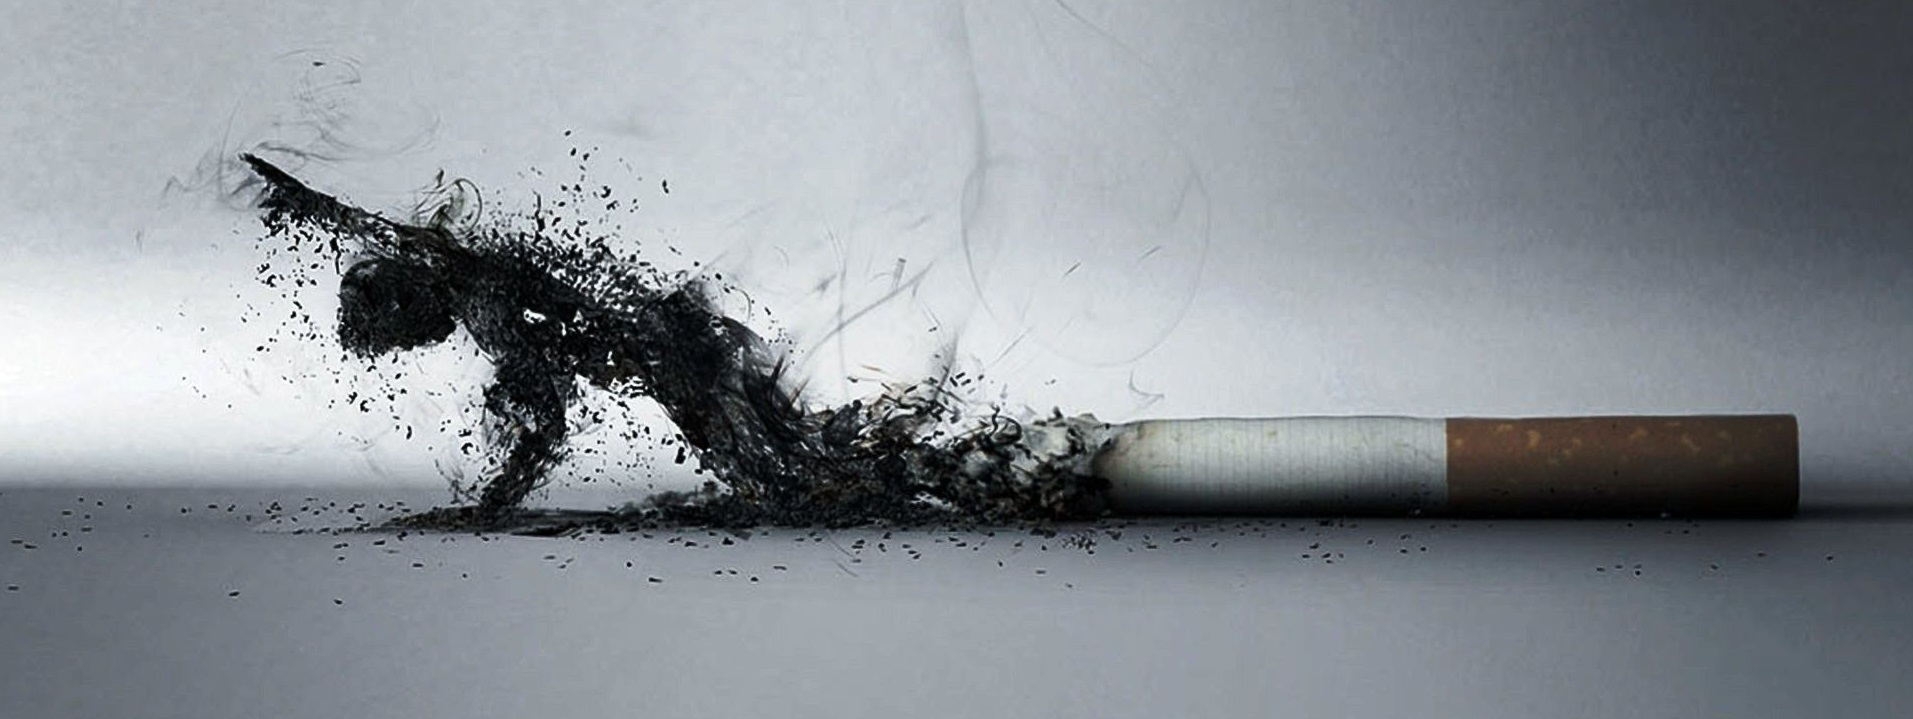 821890-cigarettes-wallpaper-hd